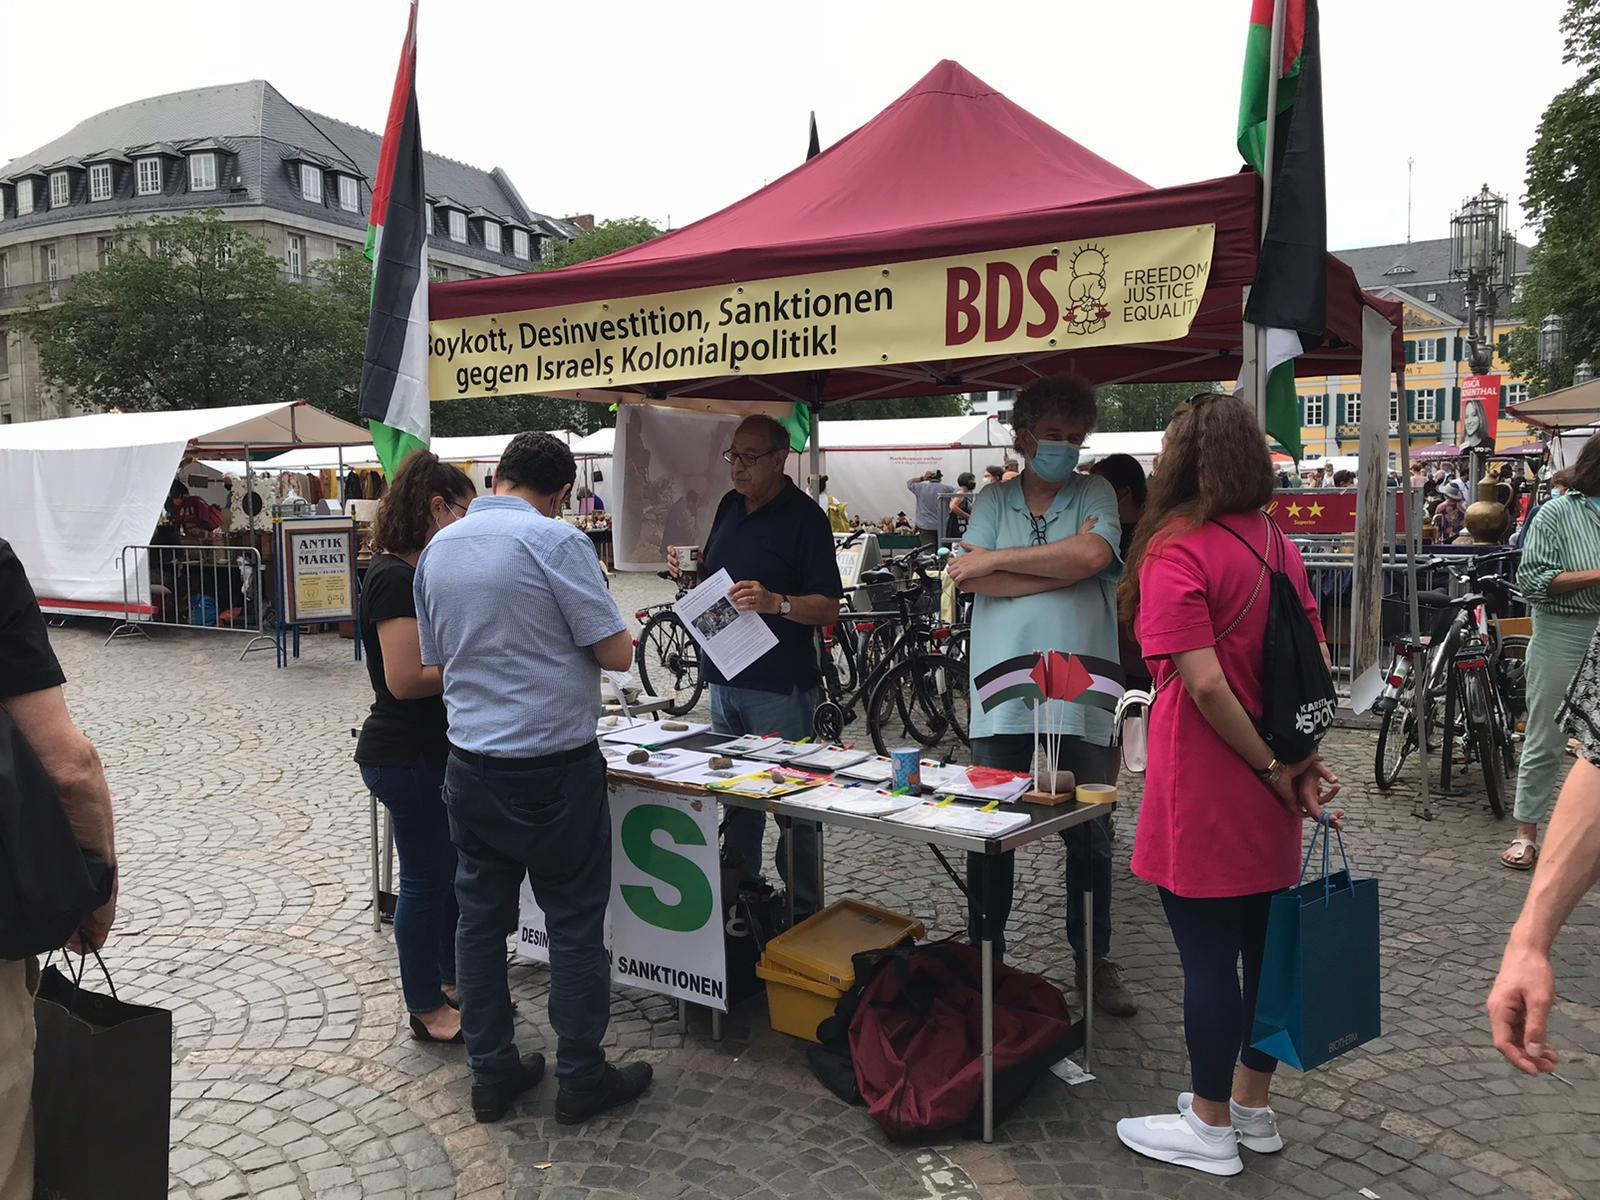 وقفة تضامنية وطاولة معلومات تضامنا مع الشعب الفلسطيني في مدينة بون الألمانية1